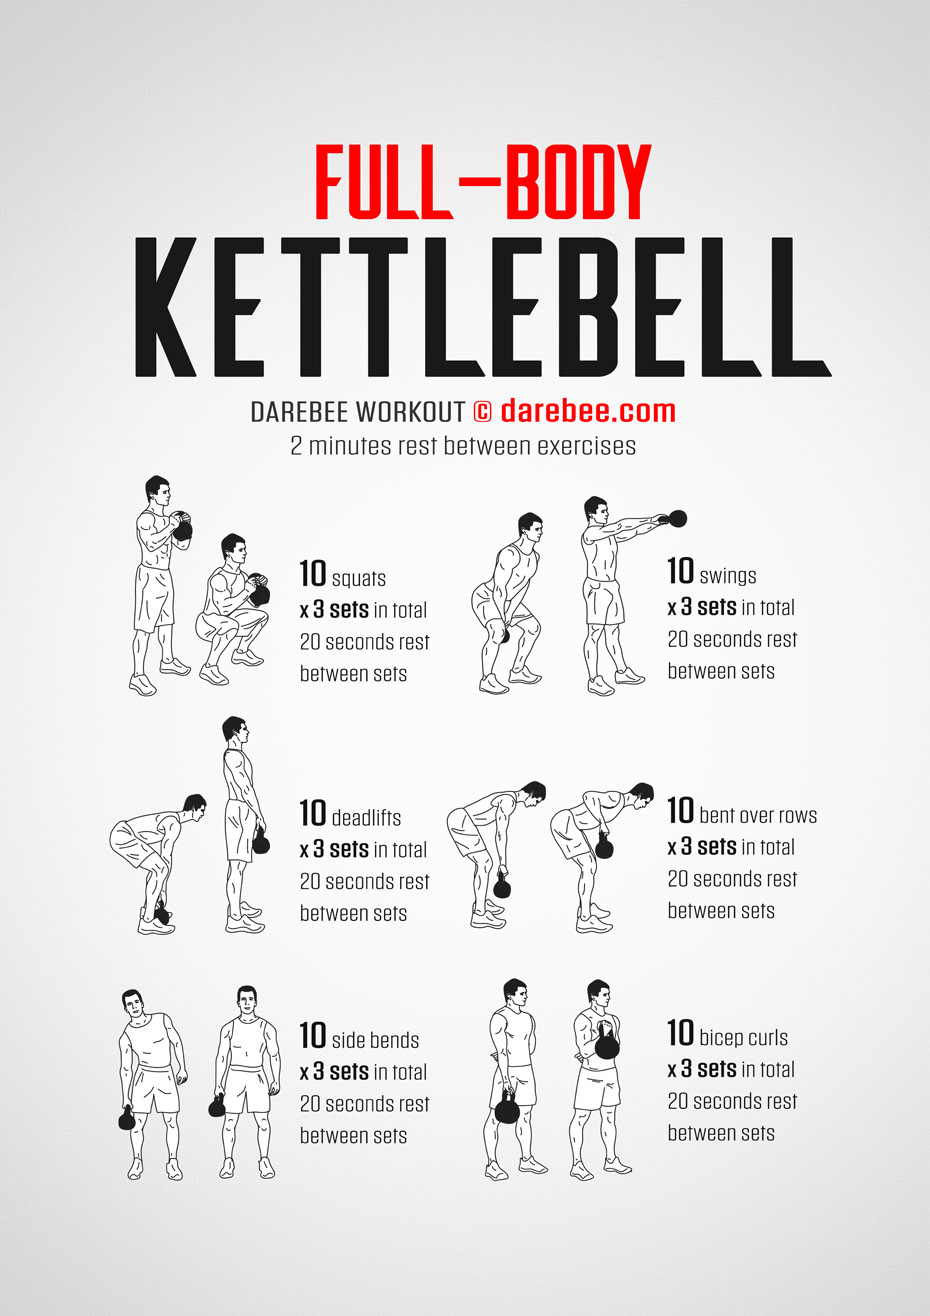 Full Body Kettlebell Workout